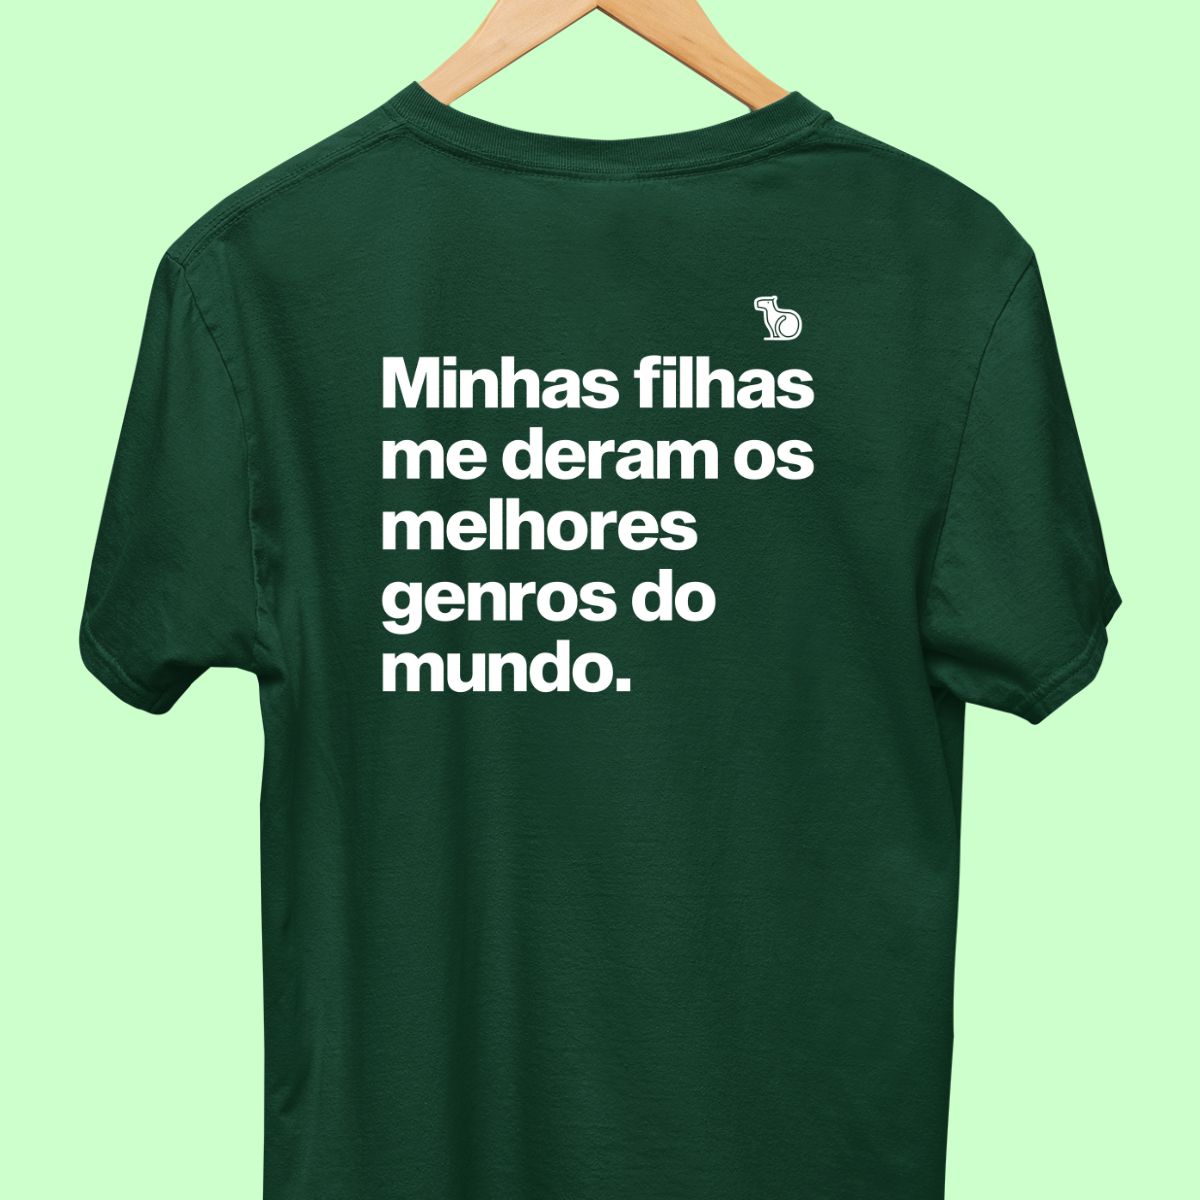 Camiseta com a frase "Minhas filhas me deram os melhores genros do mundo." masculina verde.